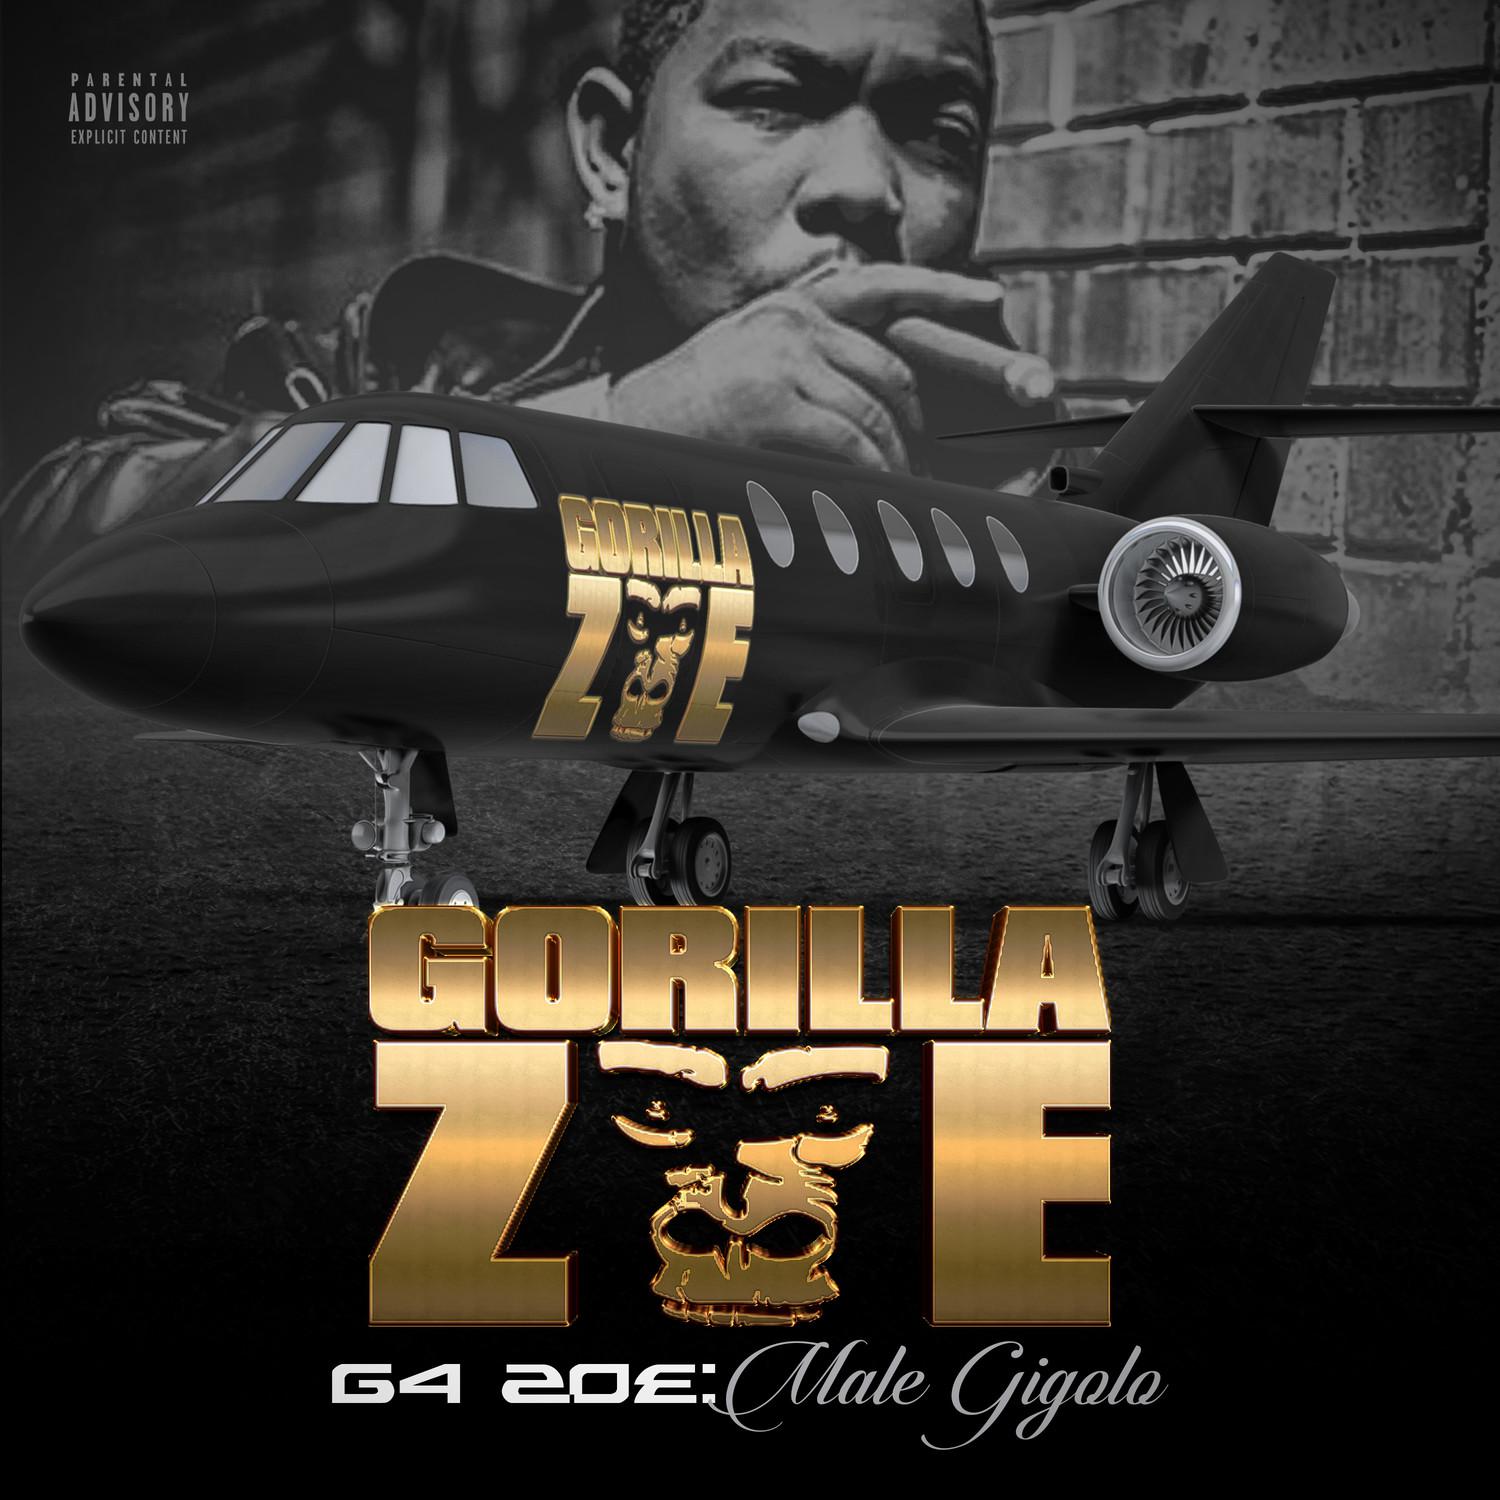 G4 Zoe: Male Gigolo (Deluxe Edition)